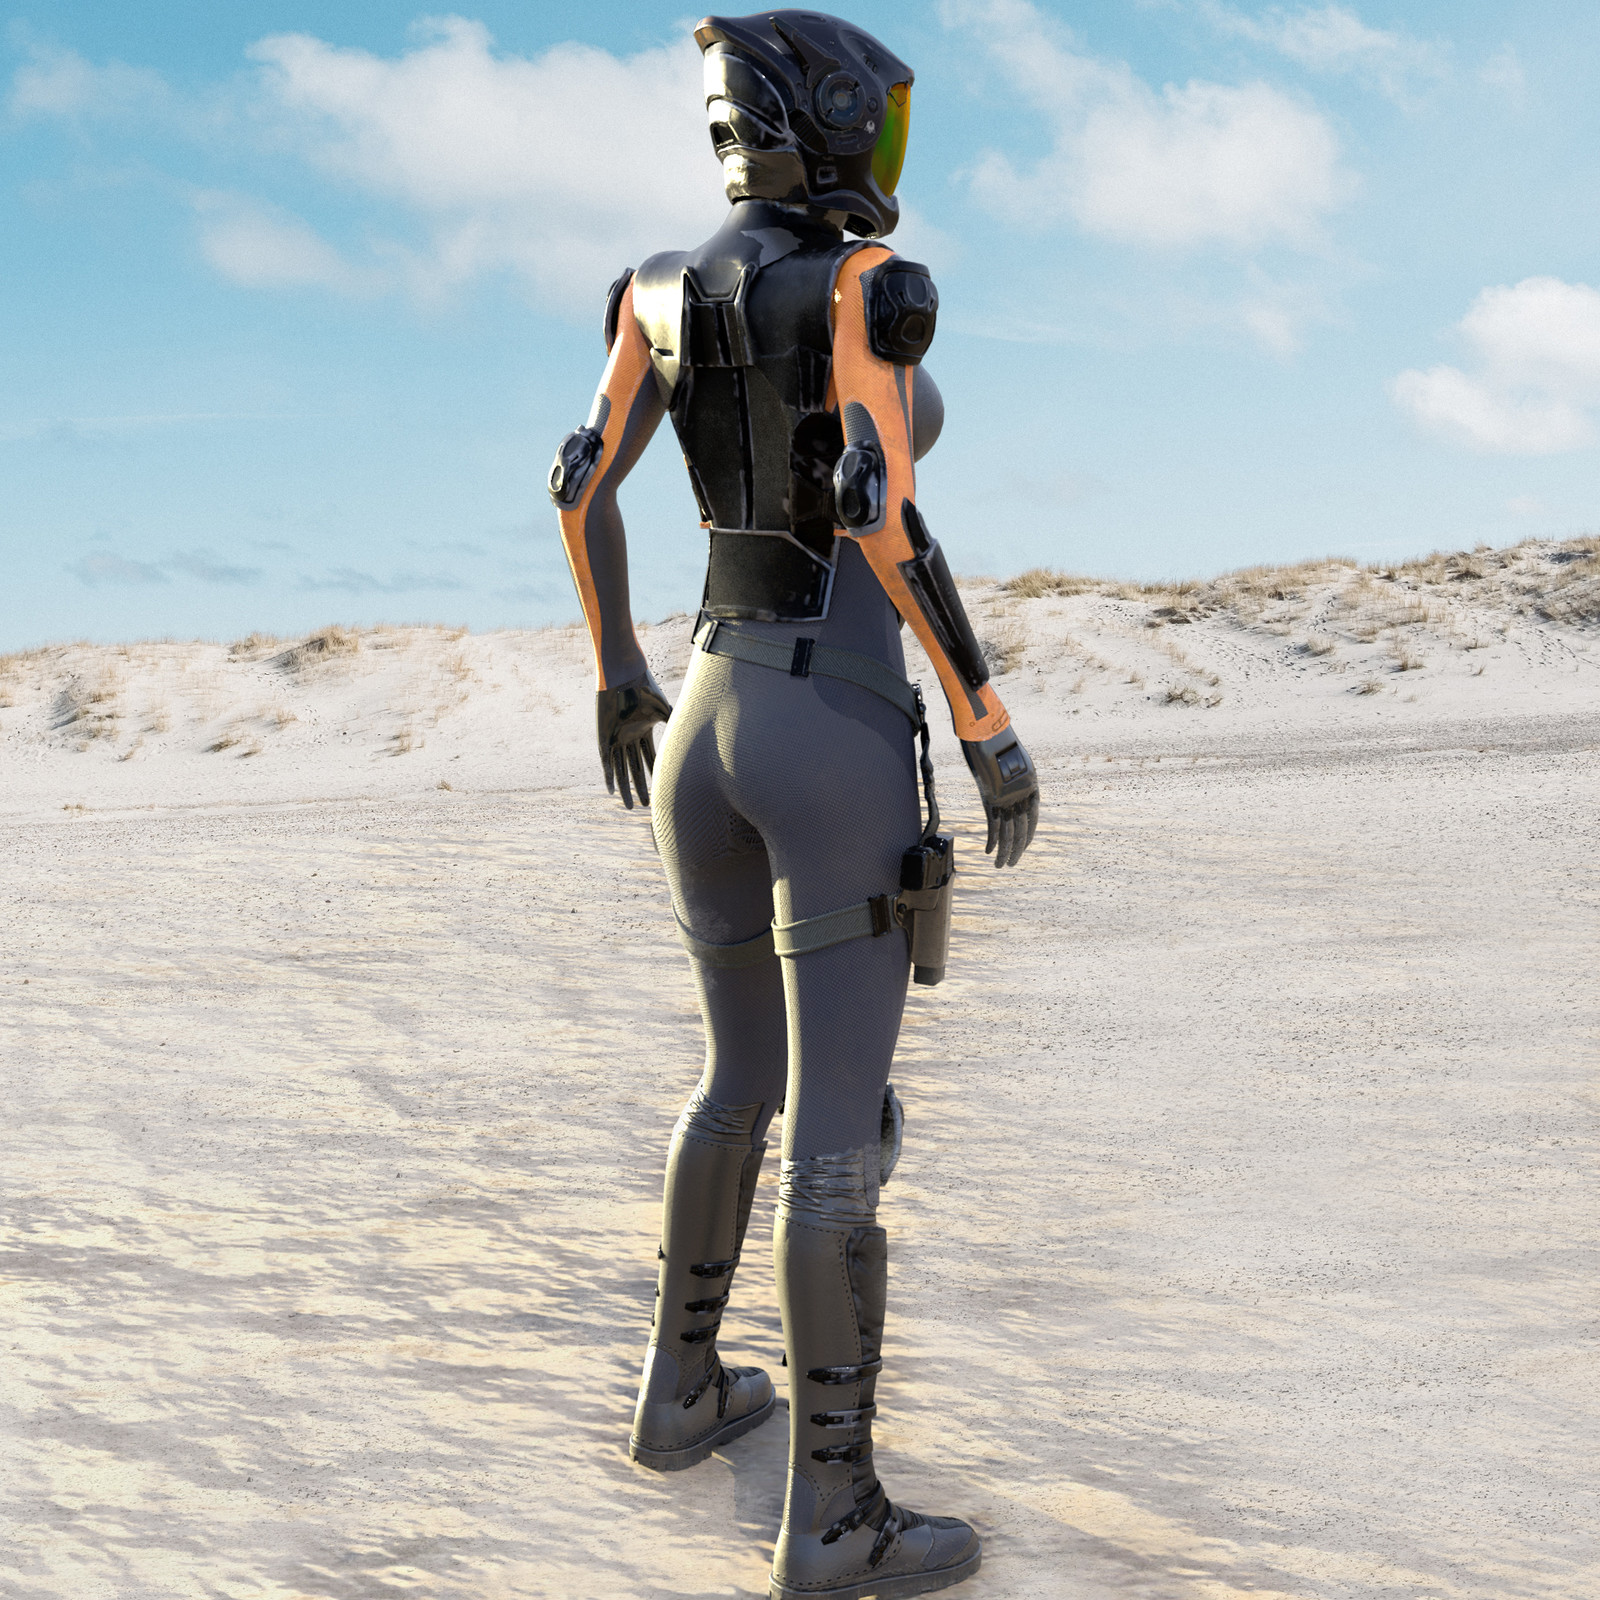 Desert biker girl character